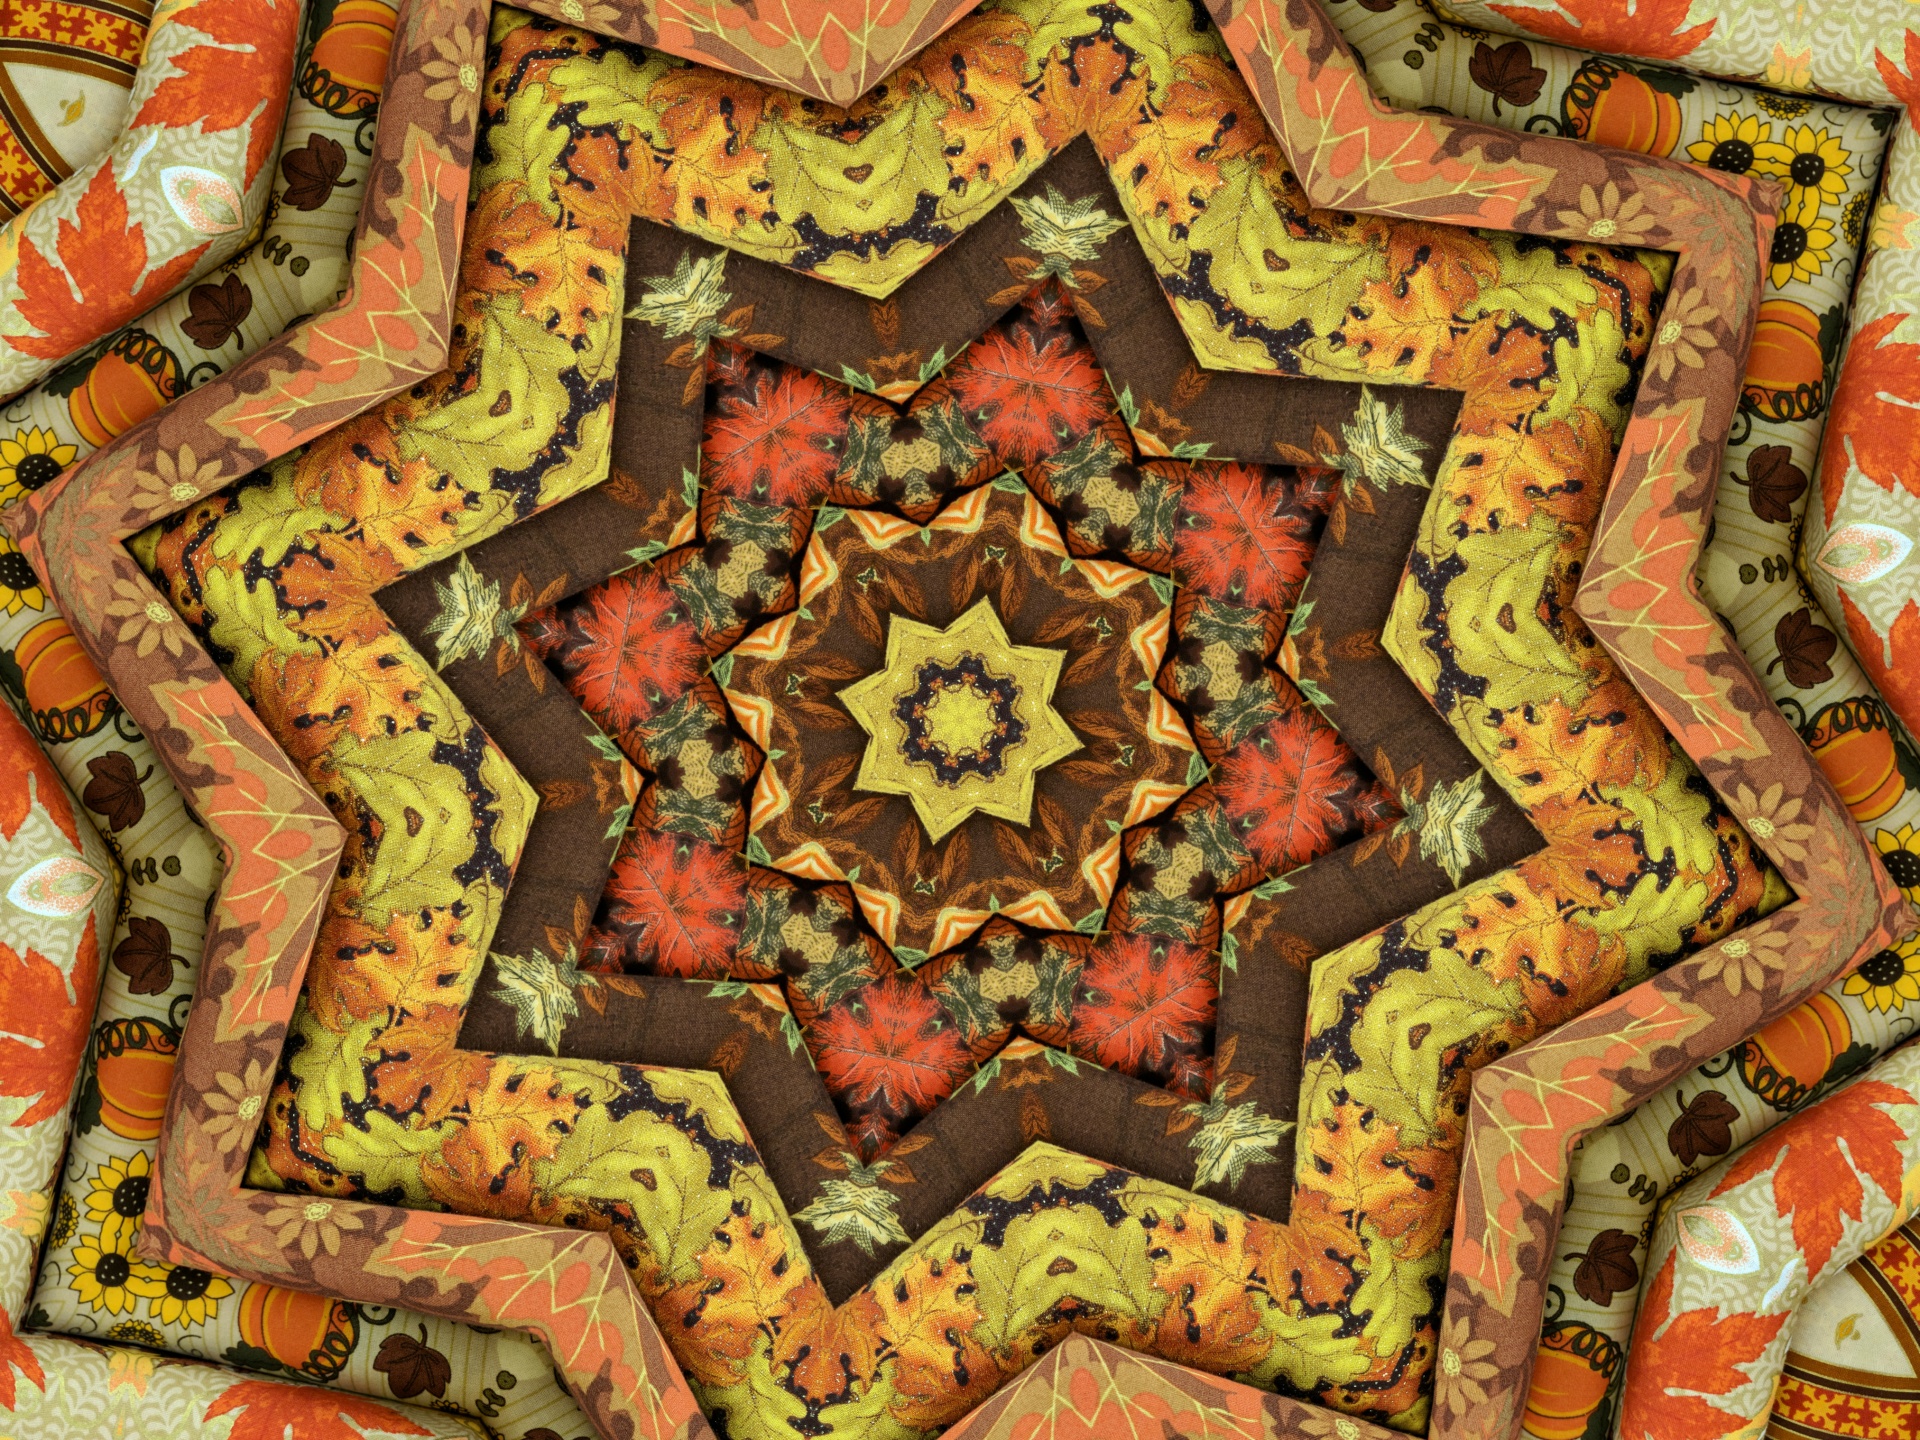 Autumn Quilt Background